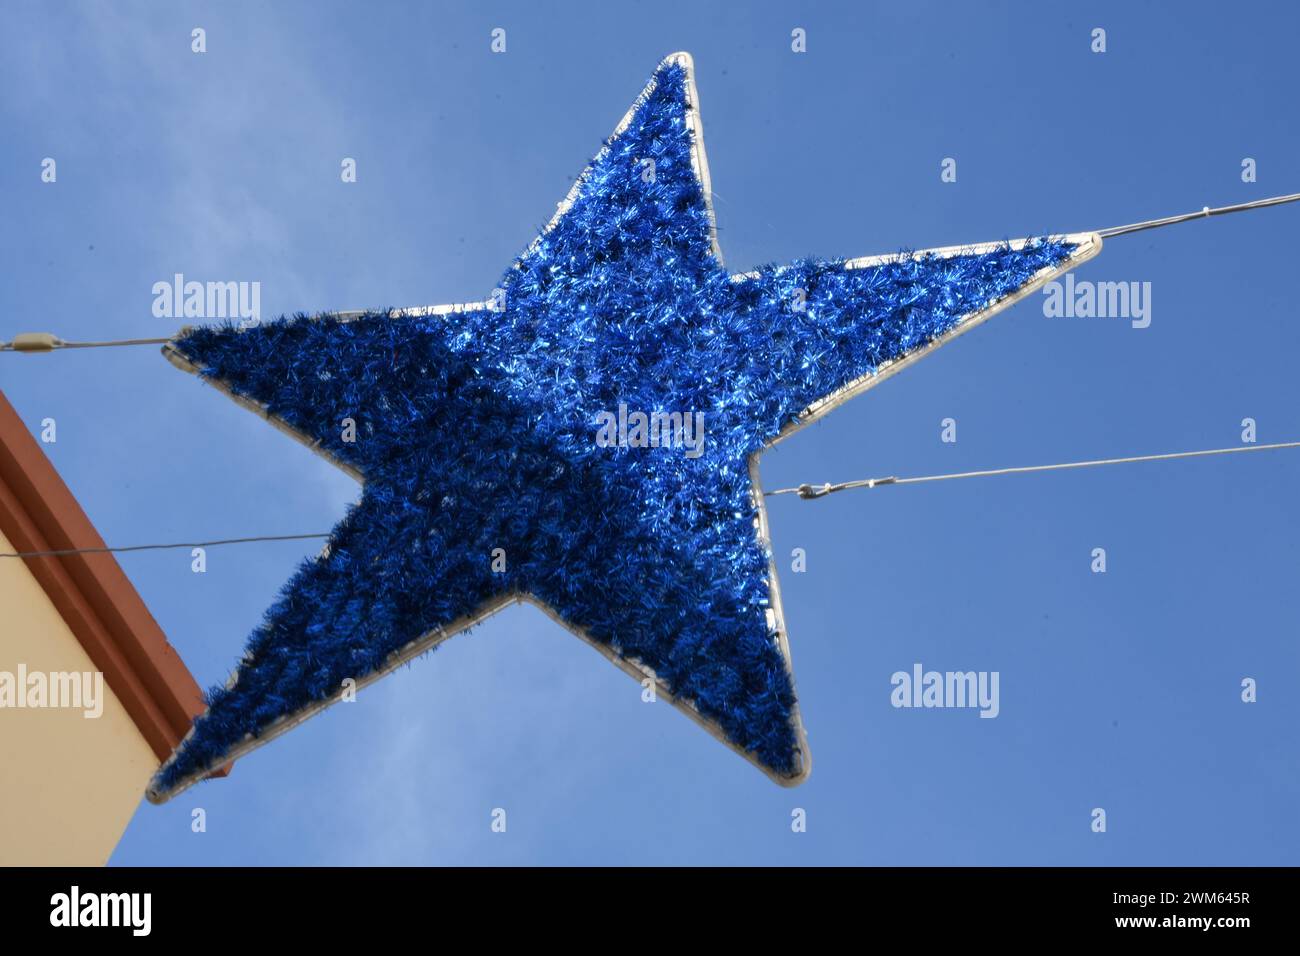 Grande étoile bleue décorative dans une rue piéton à Faro, Portogallo Foto Stock